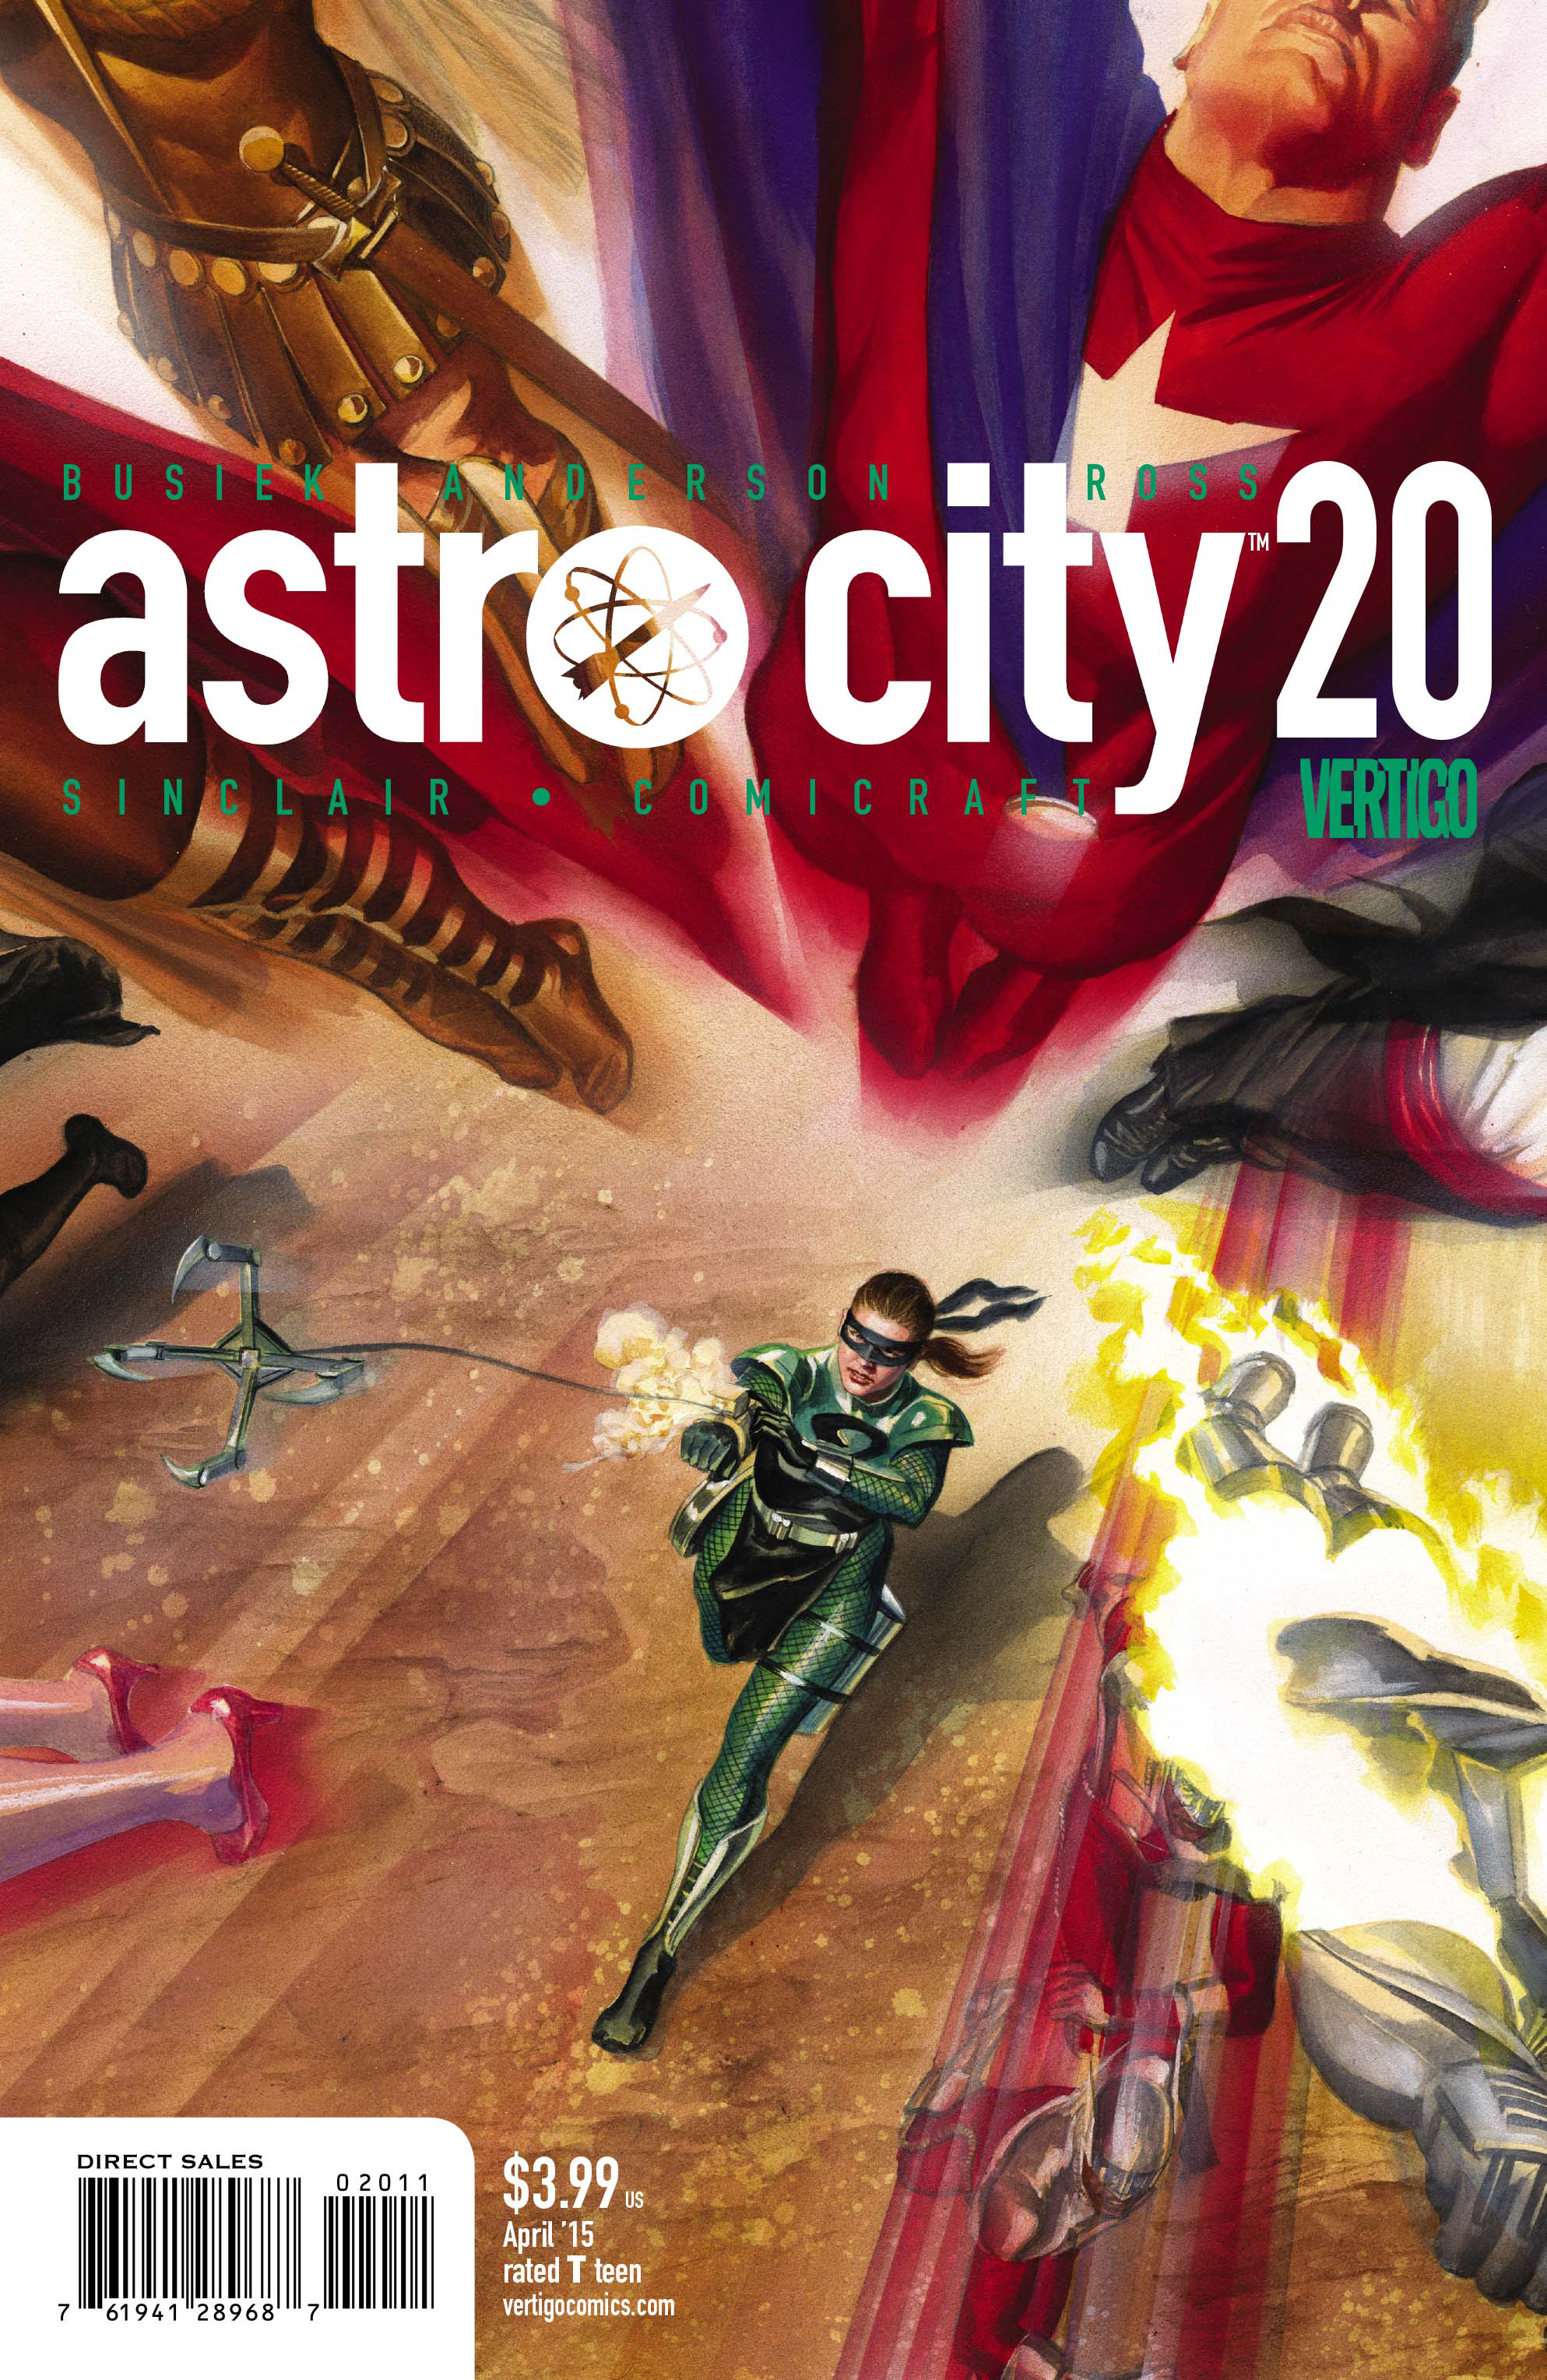 ASTRO CITY #20